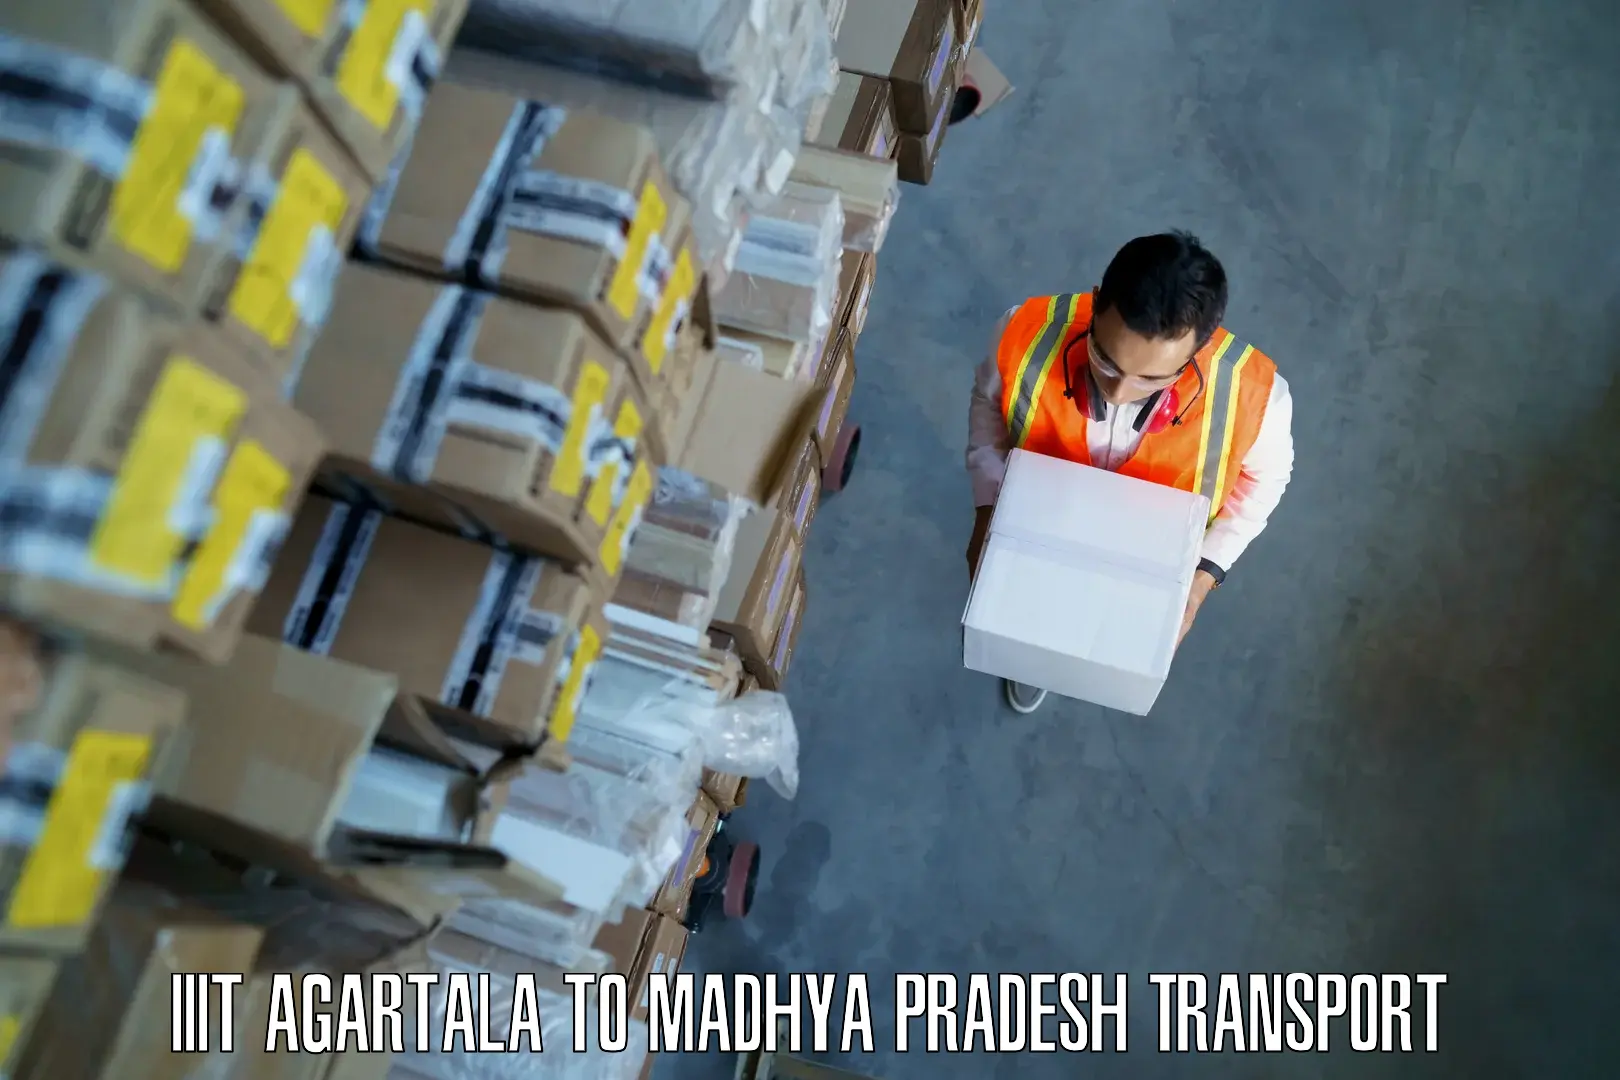 Delivery service IIIT Agartala to Khandwa